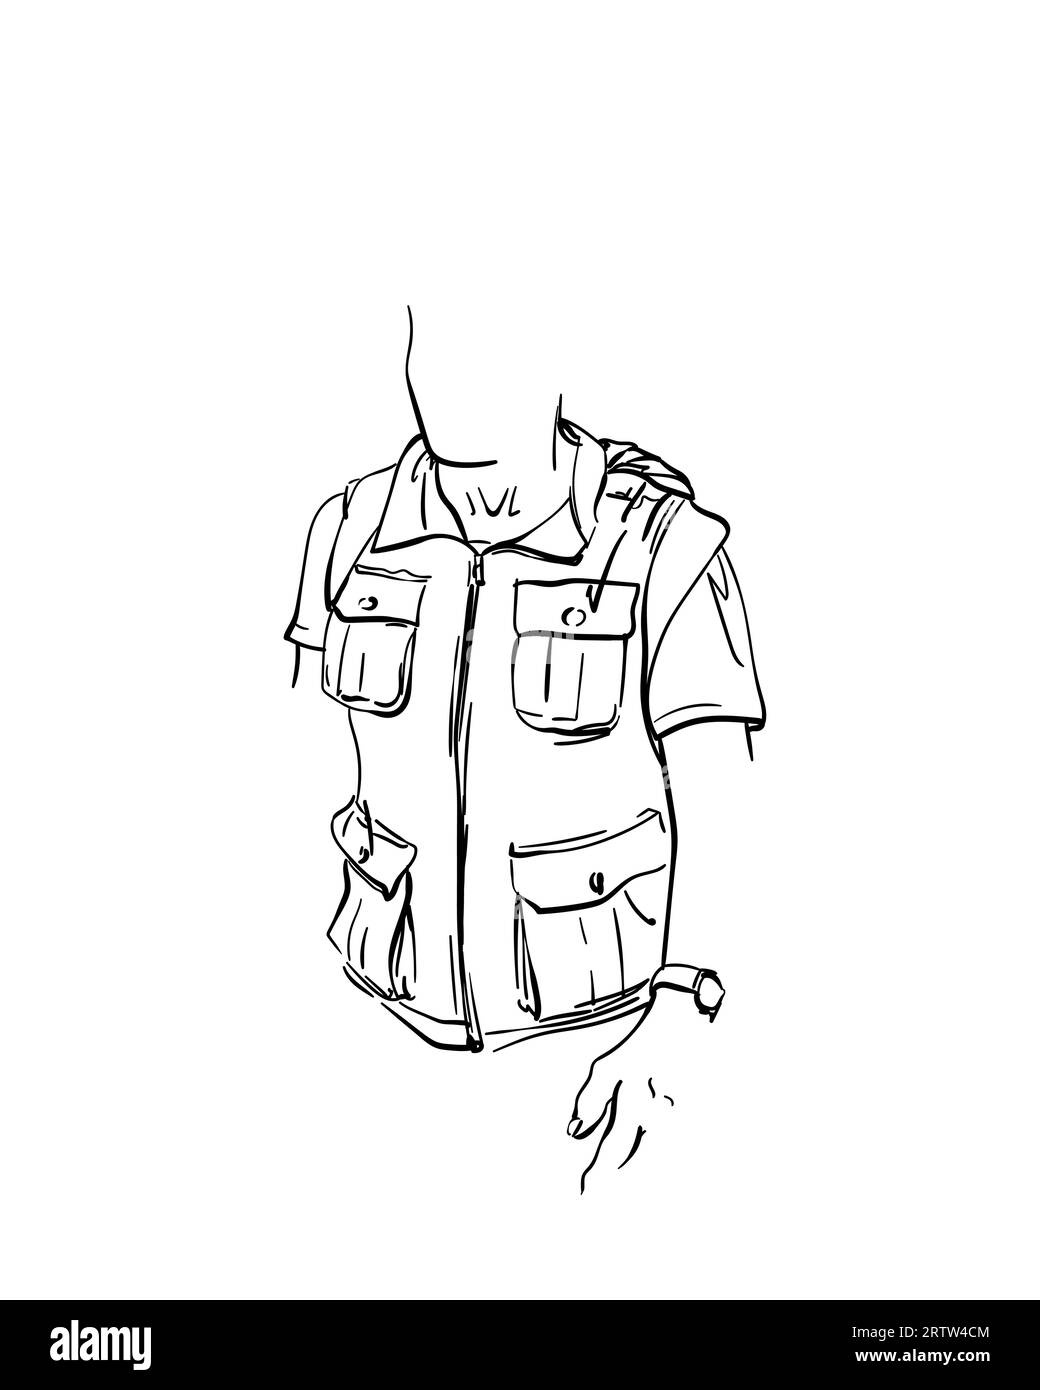 Dessin de gilet avec de nombreuses poches sur jeune homme sans visage, esquisse vectorielle isolée à la main dessinée Illustration de Vecteur